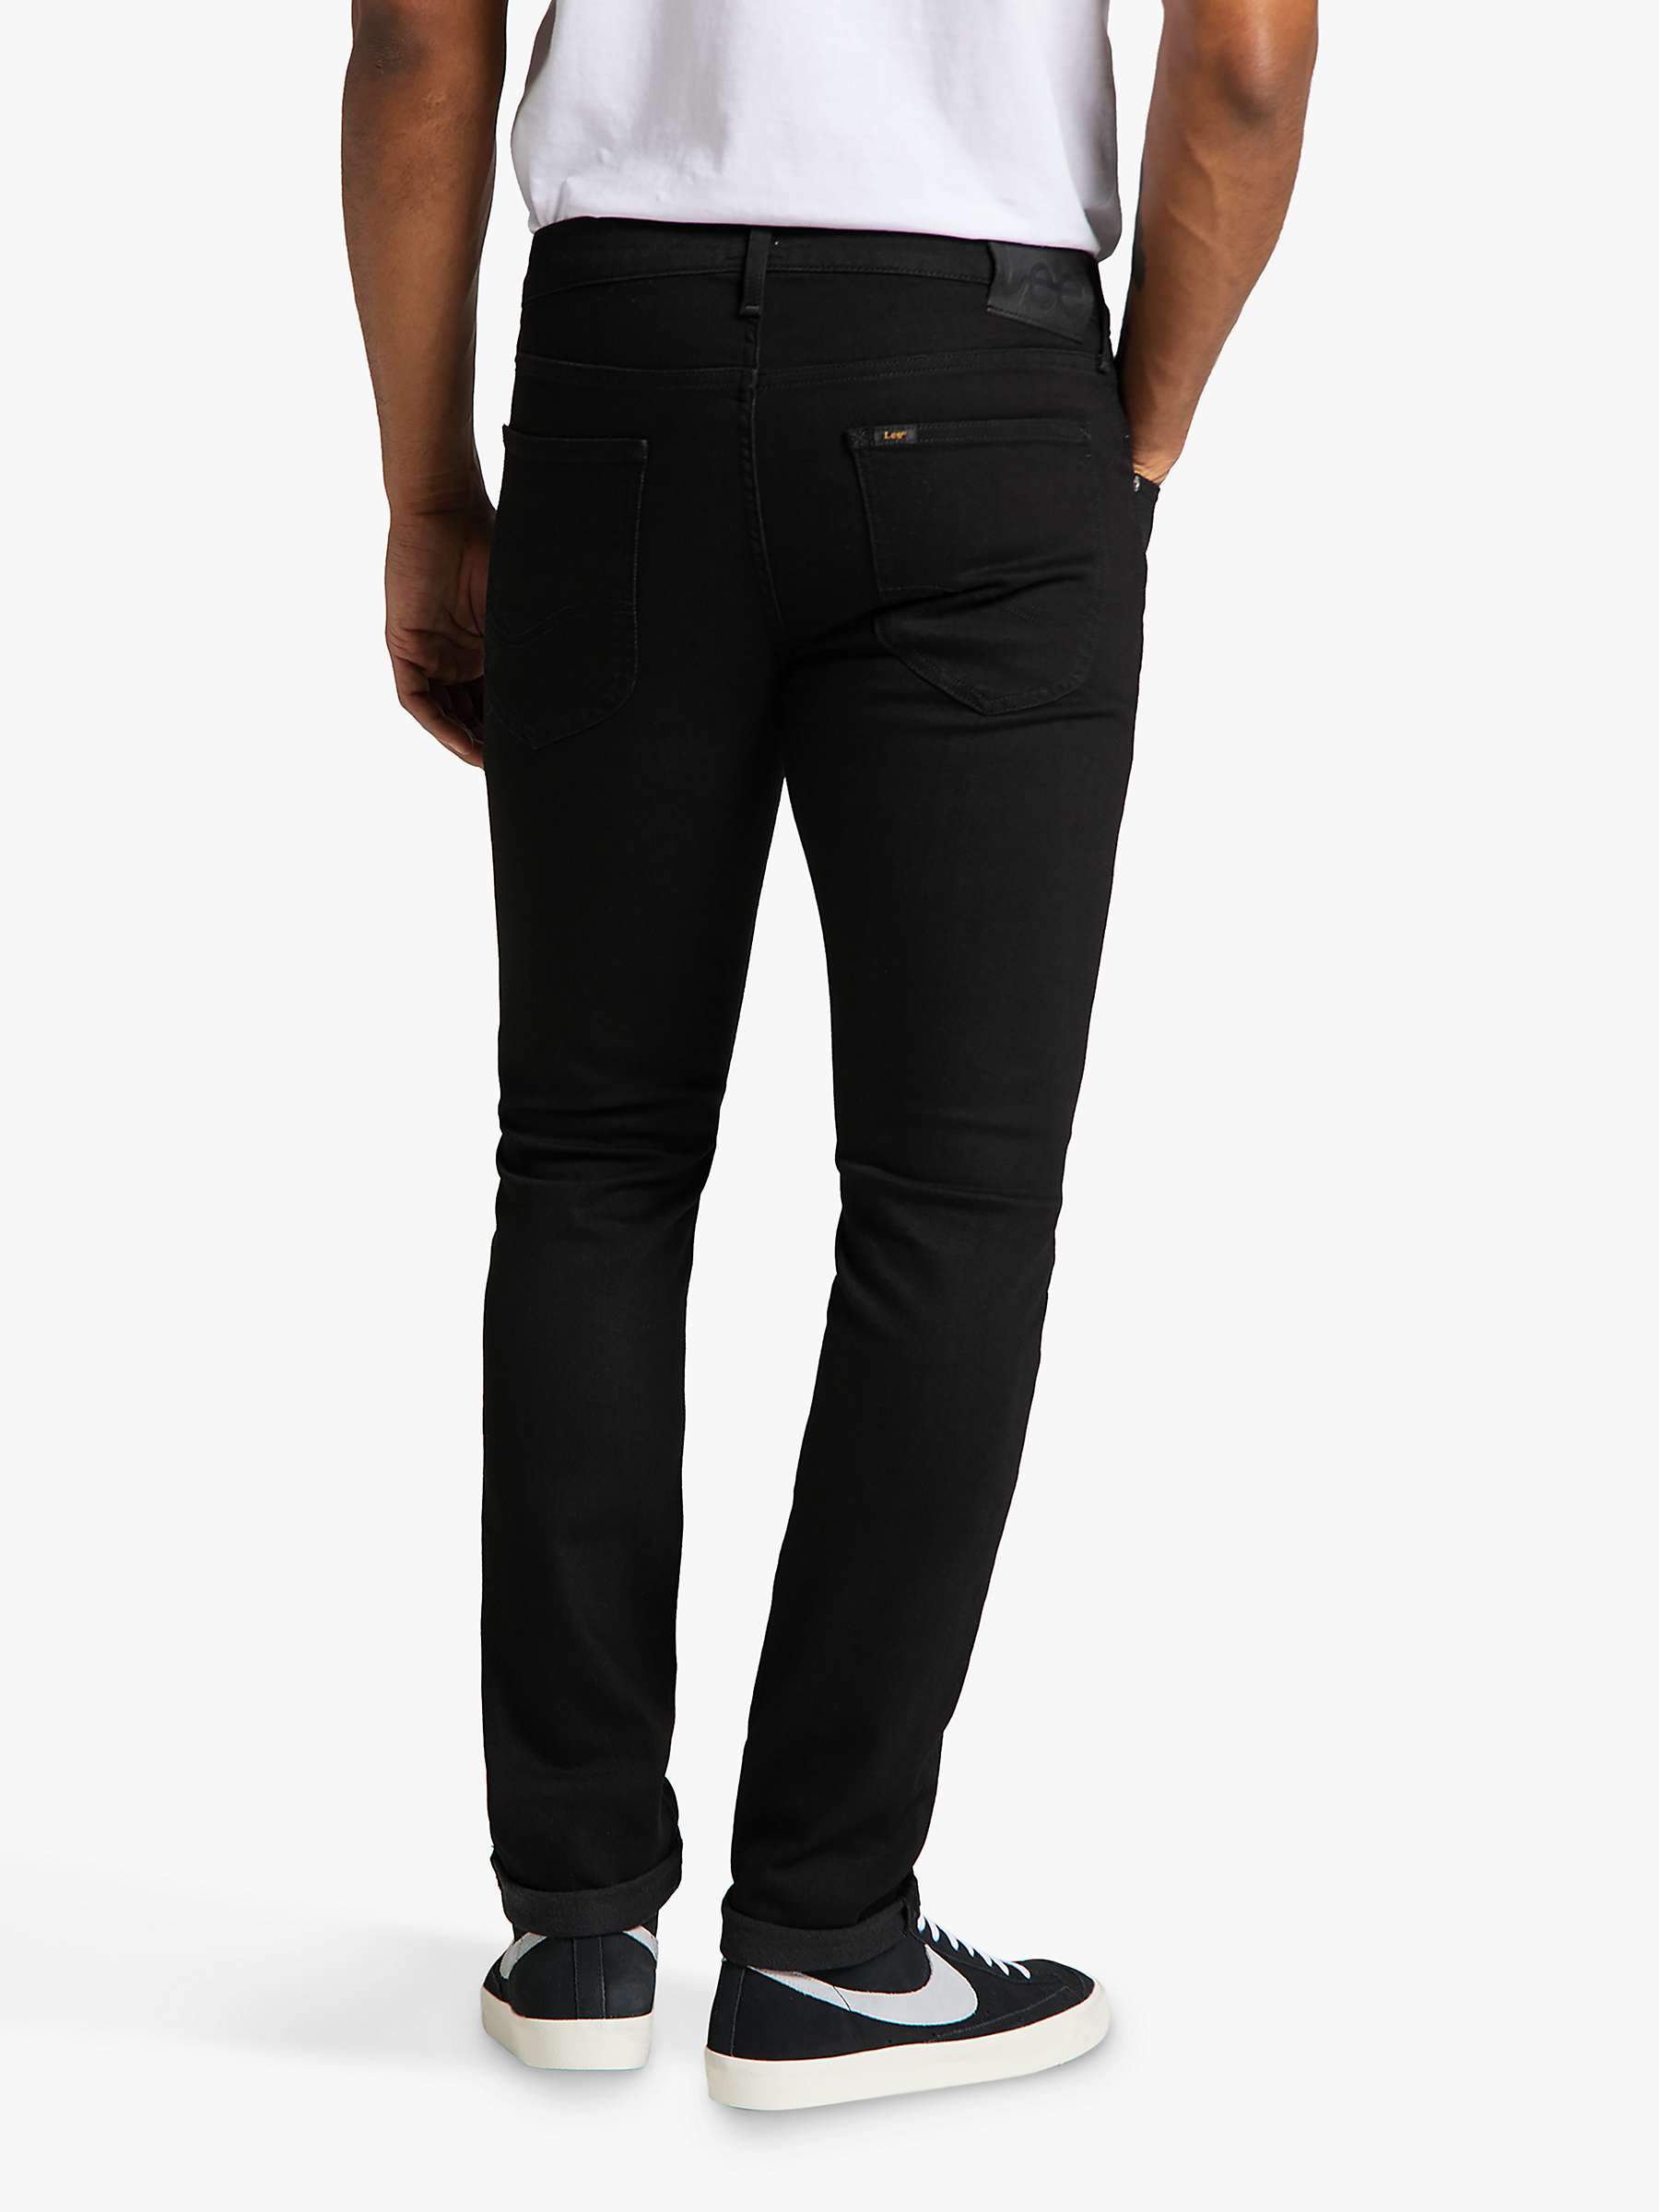 Buy Lee Luke Slim Fit Jeans, L719HFAE - Clean Black Online at johnlewis.com